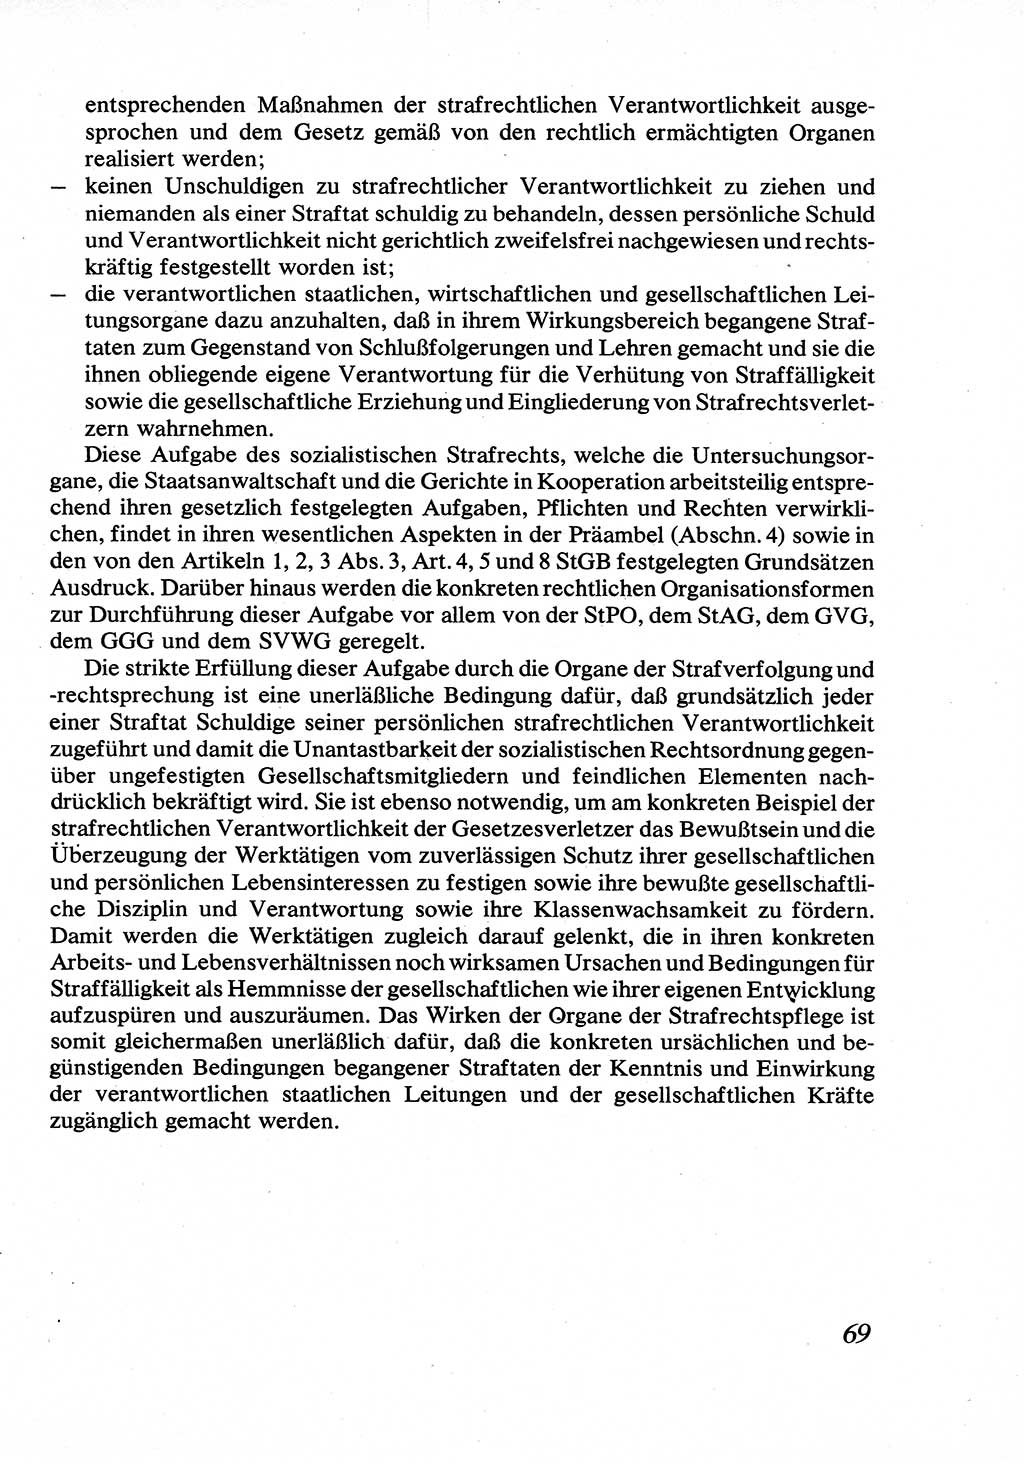 Strafrecht [Deutsche Demokratische Republik (DDR)], Allgemeiner Teil, Lehrbuch 1976, Seite 69 (Strafr. DDR AT Lb. 1976, S. 69)